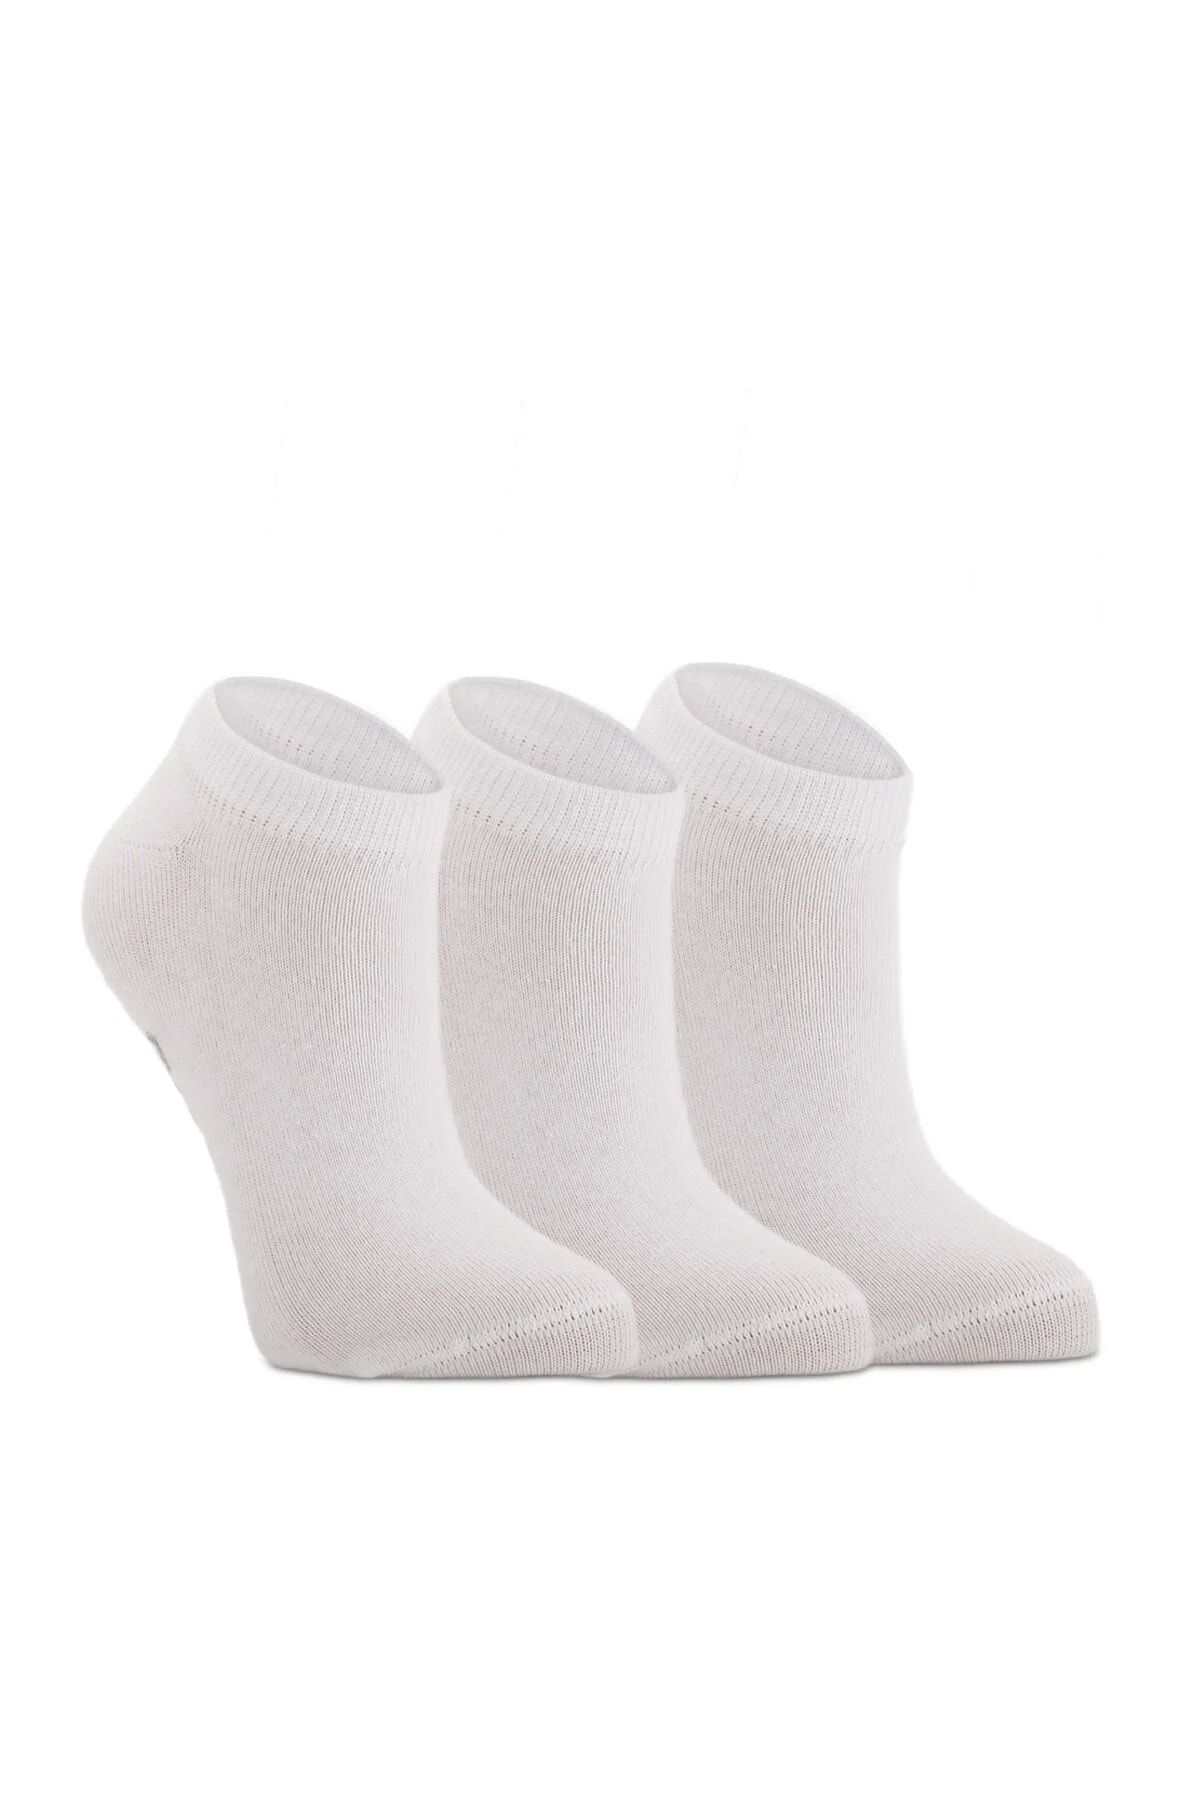 Slazenger Jaime Unisex Spor Kısa Çorap 36-44 Beyaz 3 Lü Paket